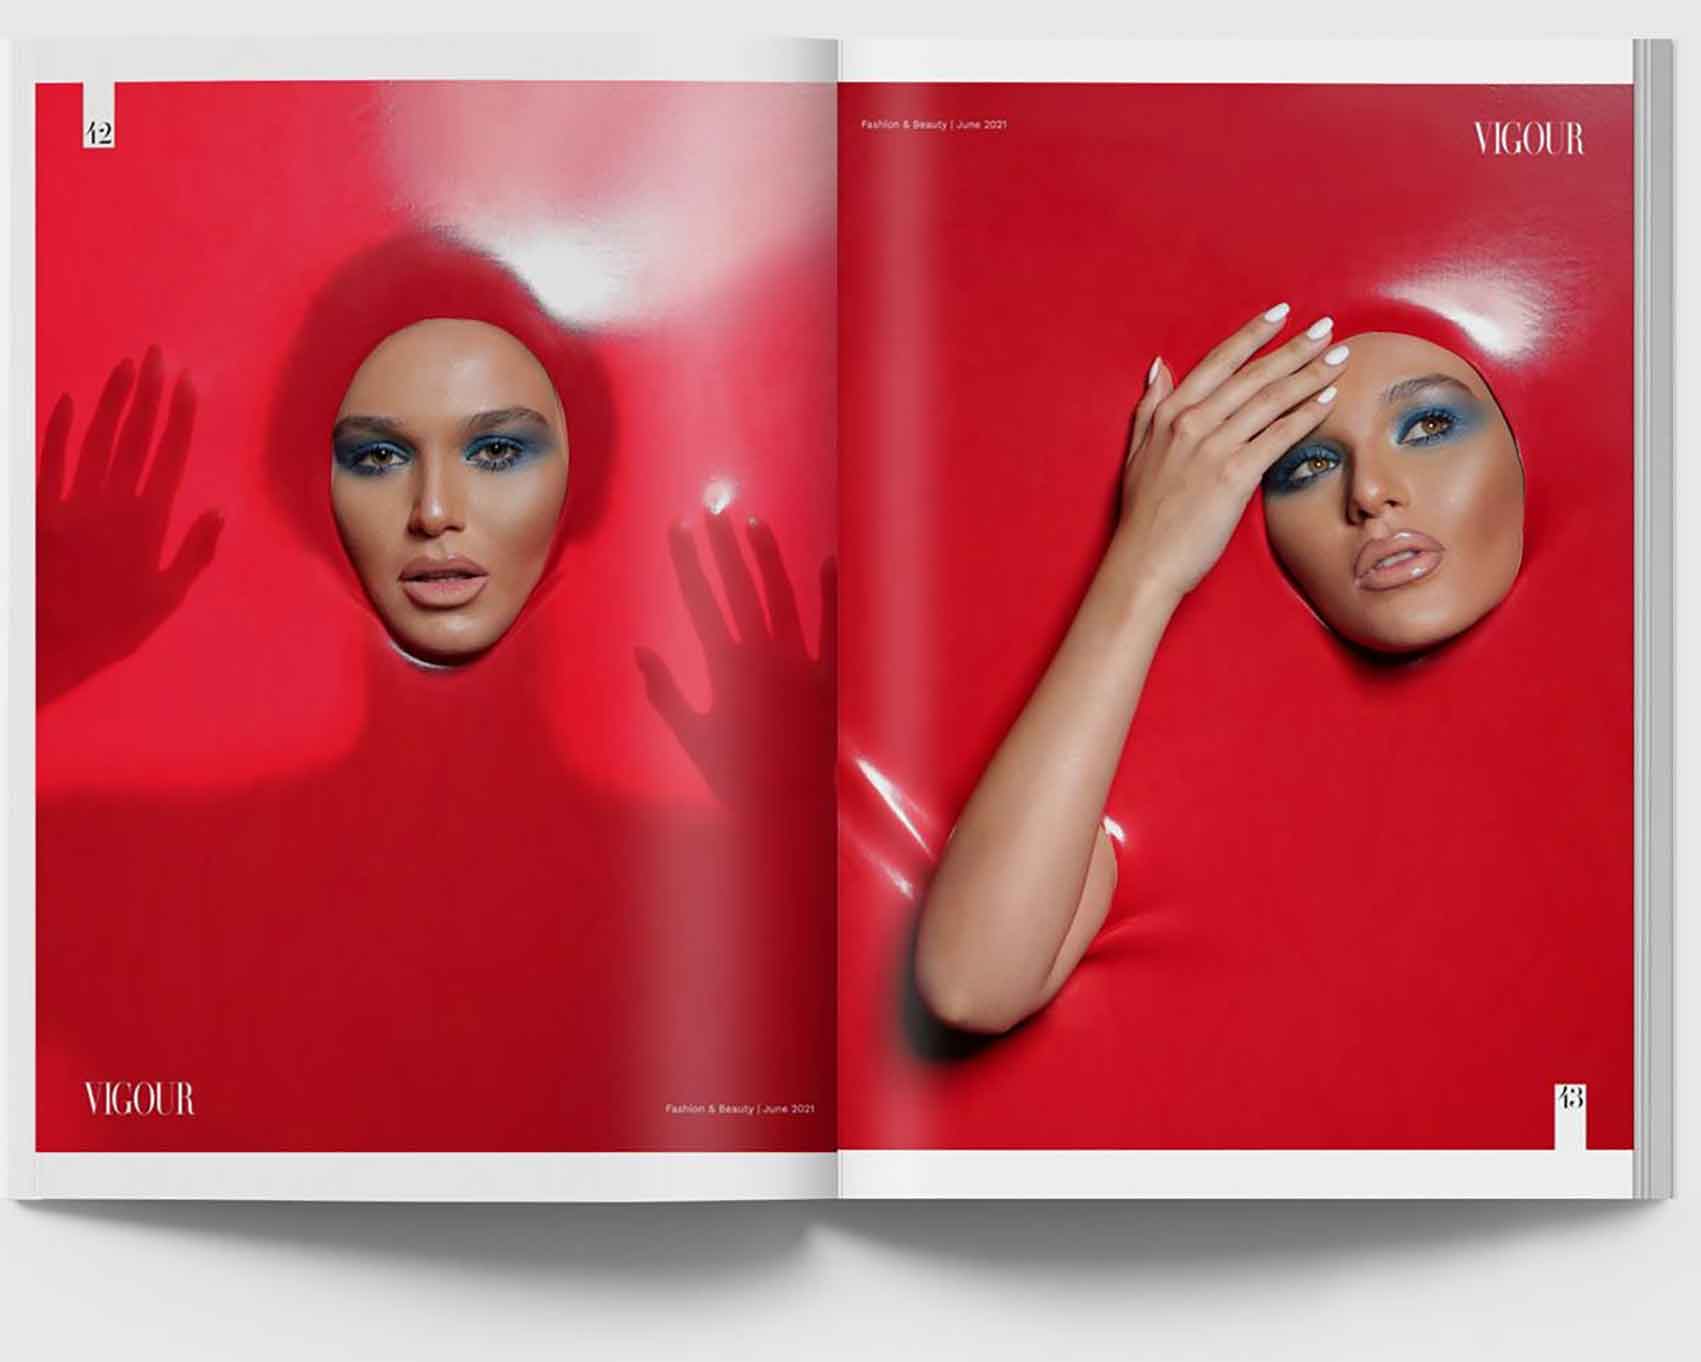 מתוך מגזין האופנה הקנדי, איפור ירין שחף, צילום מריה סלוביוב - 2